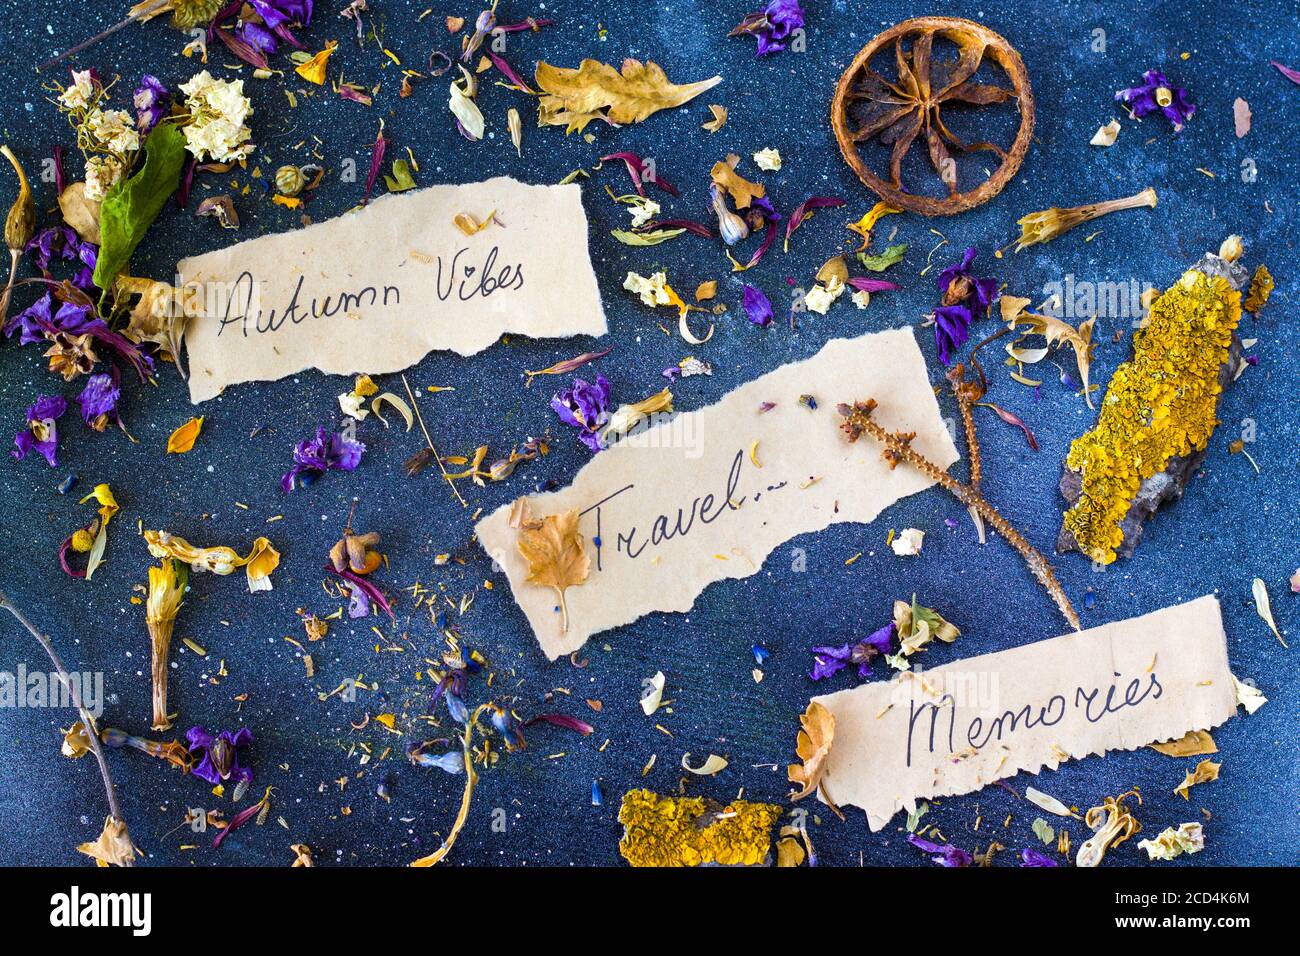 El otoño vibes viajes recuerdos, plantas secas y flores, copiar espacio de pasta, letra y palabras en el papel antiguo, tema herbario. Foto de stock